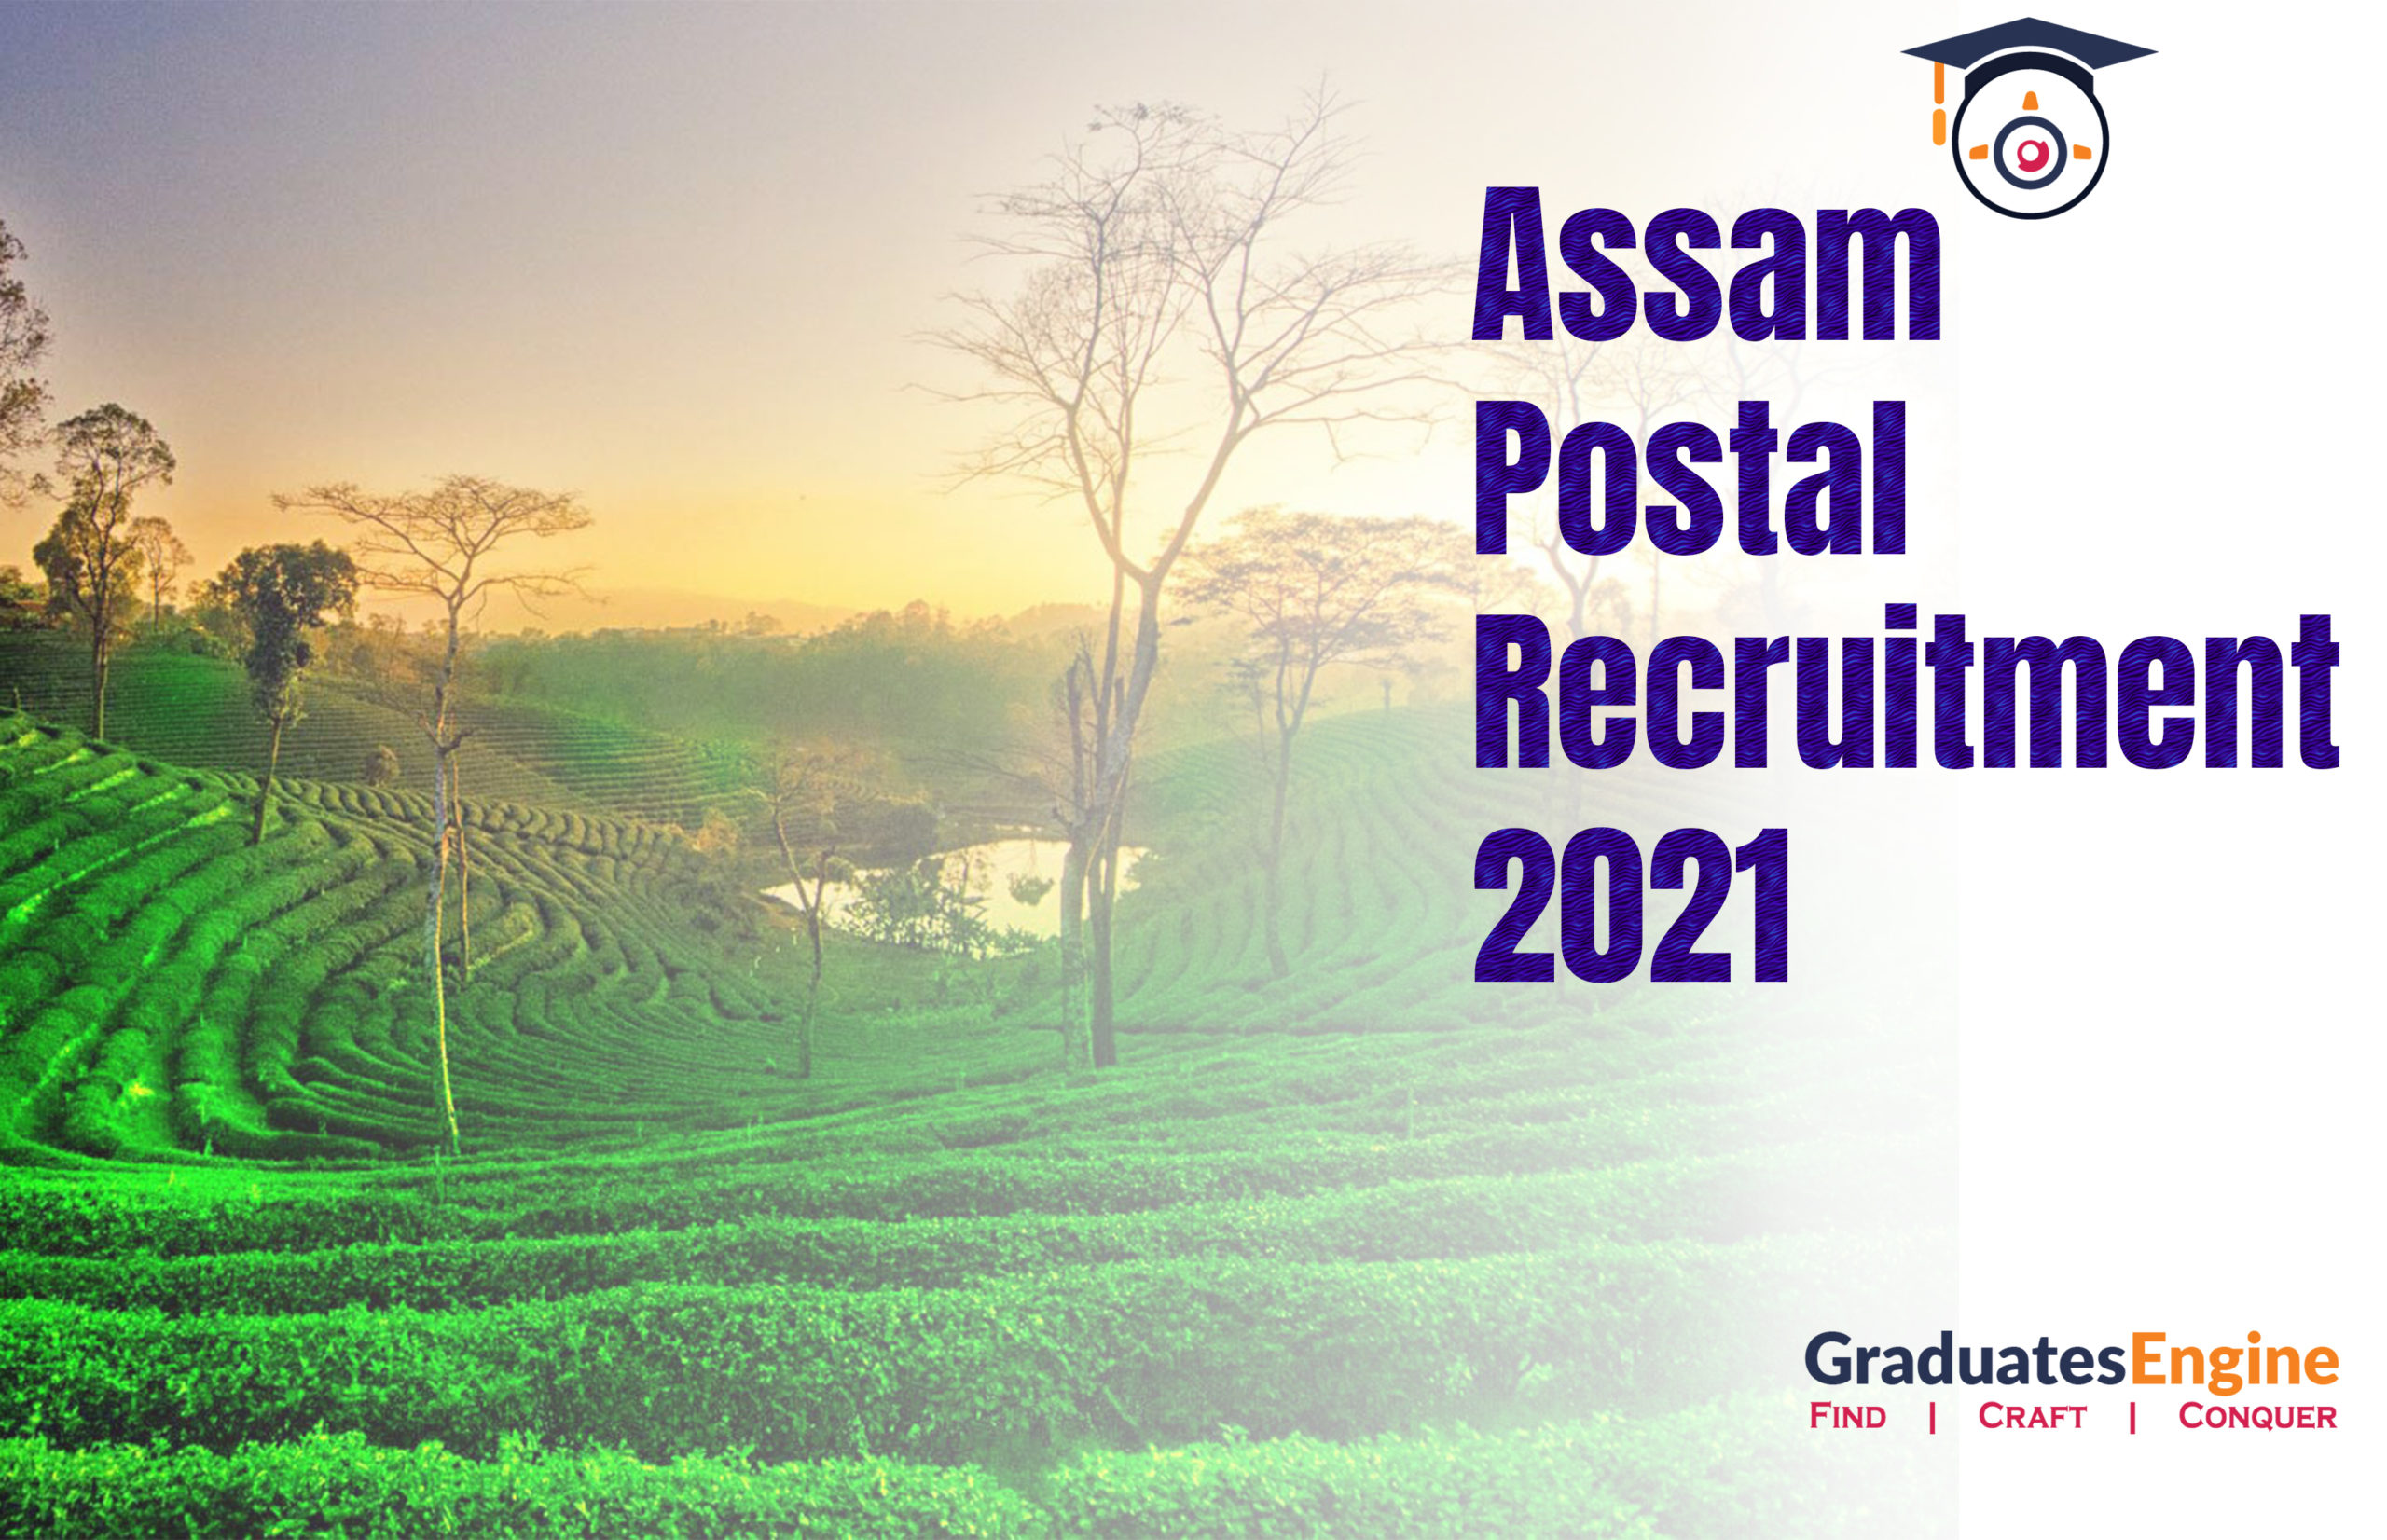 Assam Postal Recruitment 2021